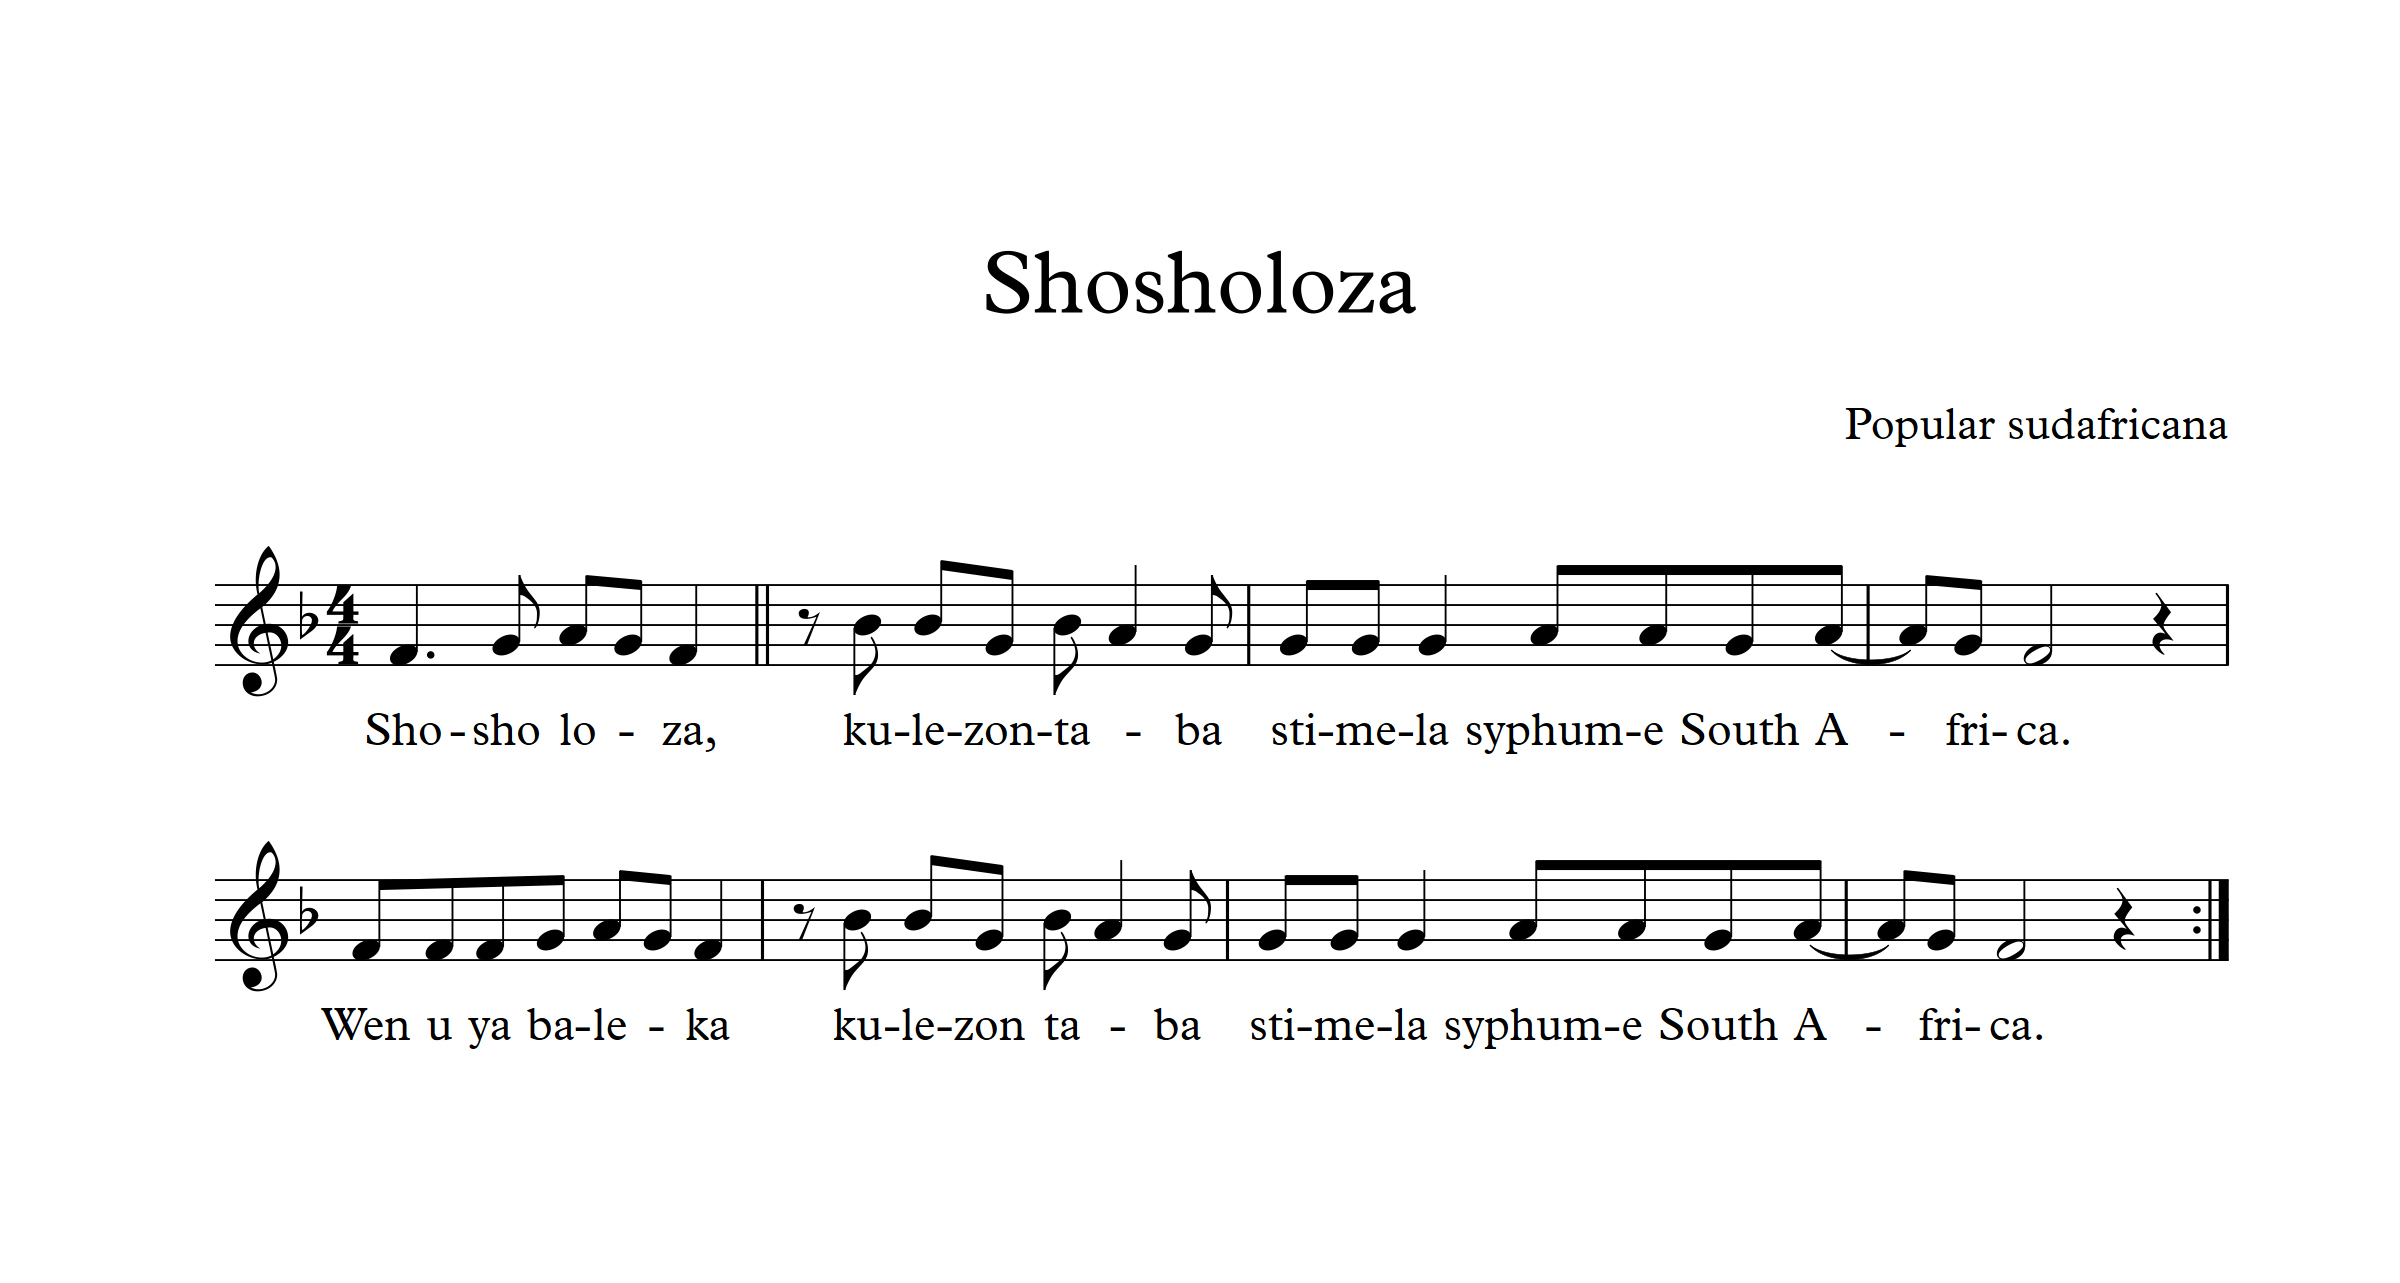 Shosholoza lyrics